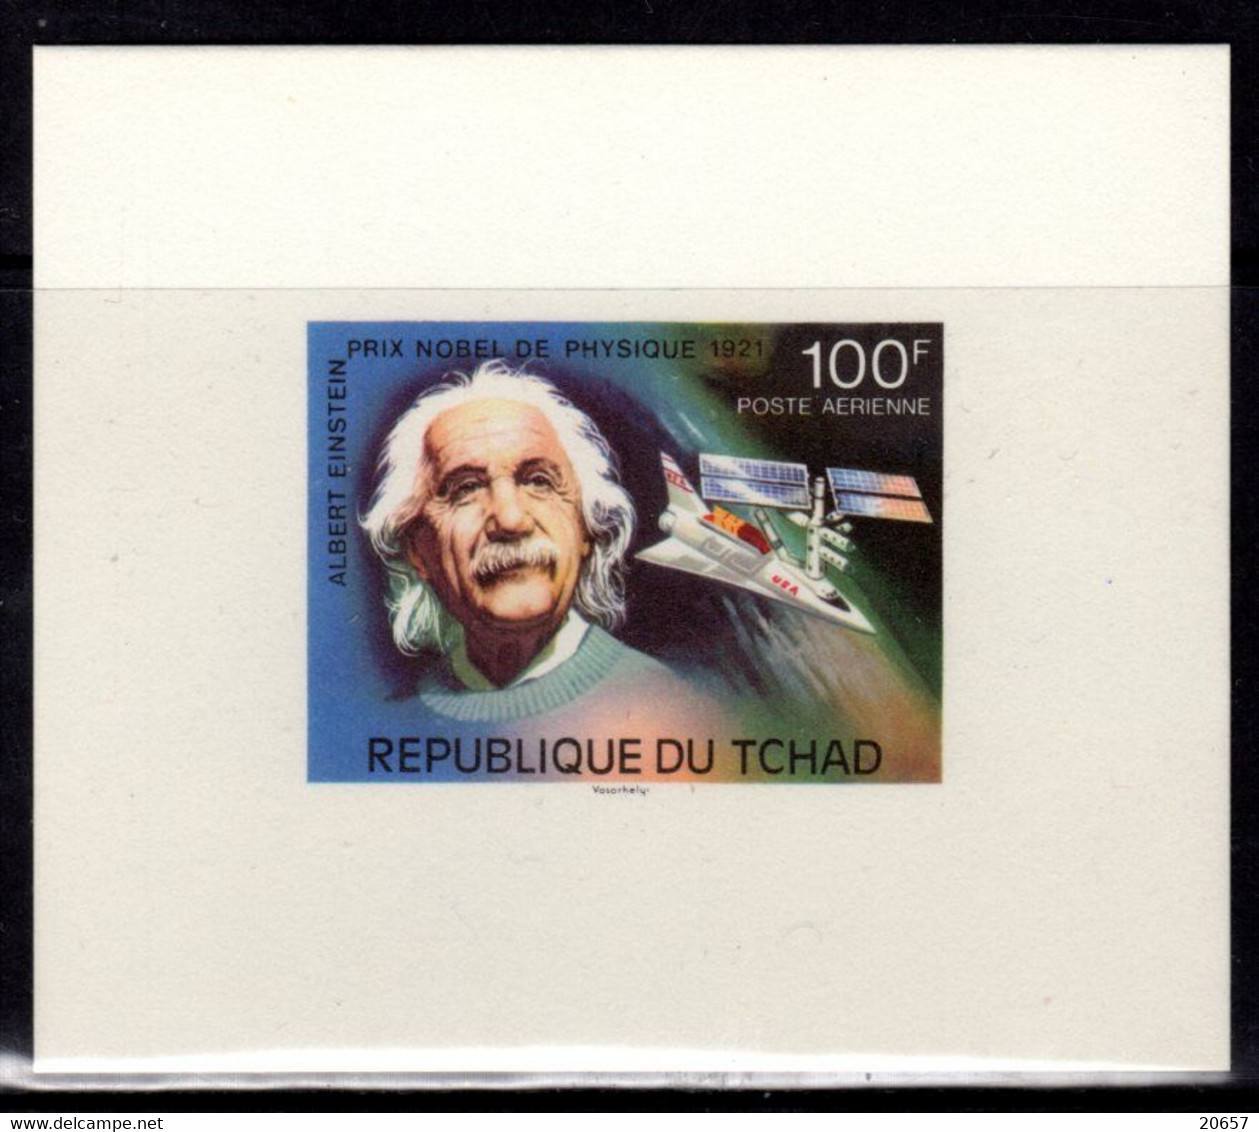 Tchad A 183 Epreuve De Luxe, Physique, Albert Einstein Prix Nobel - Albert Einstein